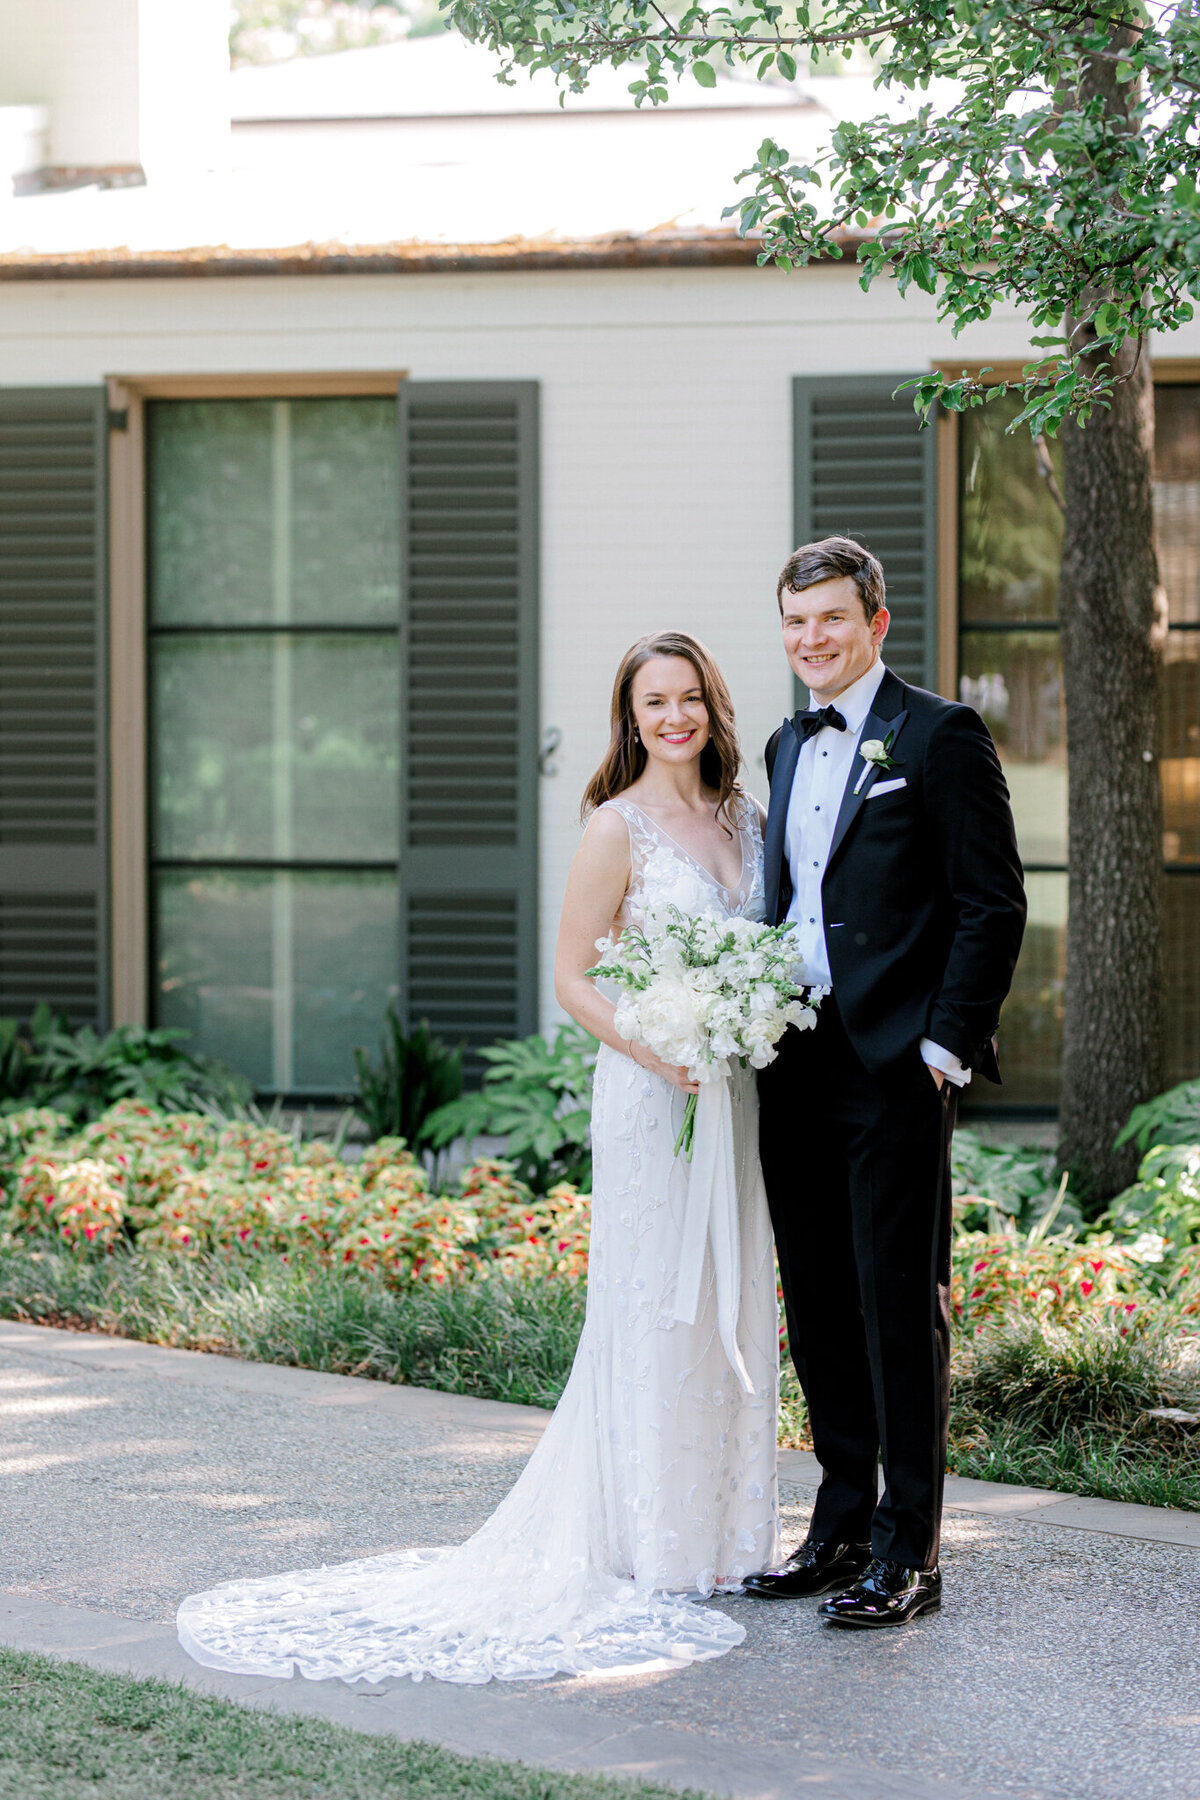 Gena & Matt's Wedding at the Dallas Arboretum | Dallas Wedding Photographer | Sami Kathryn Photography-100